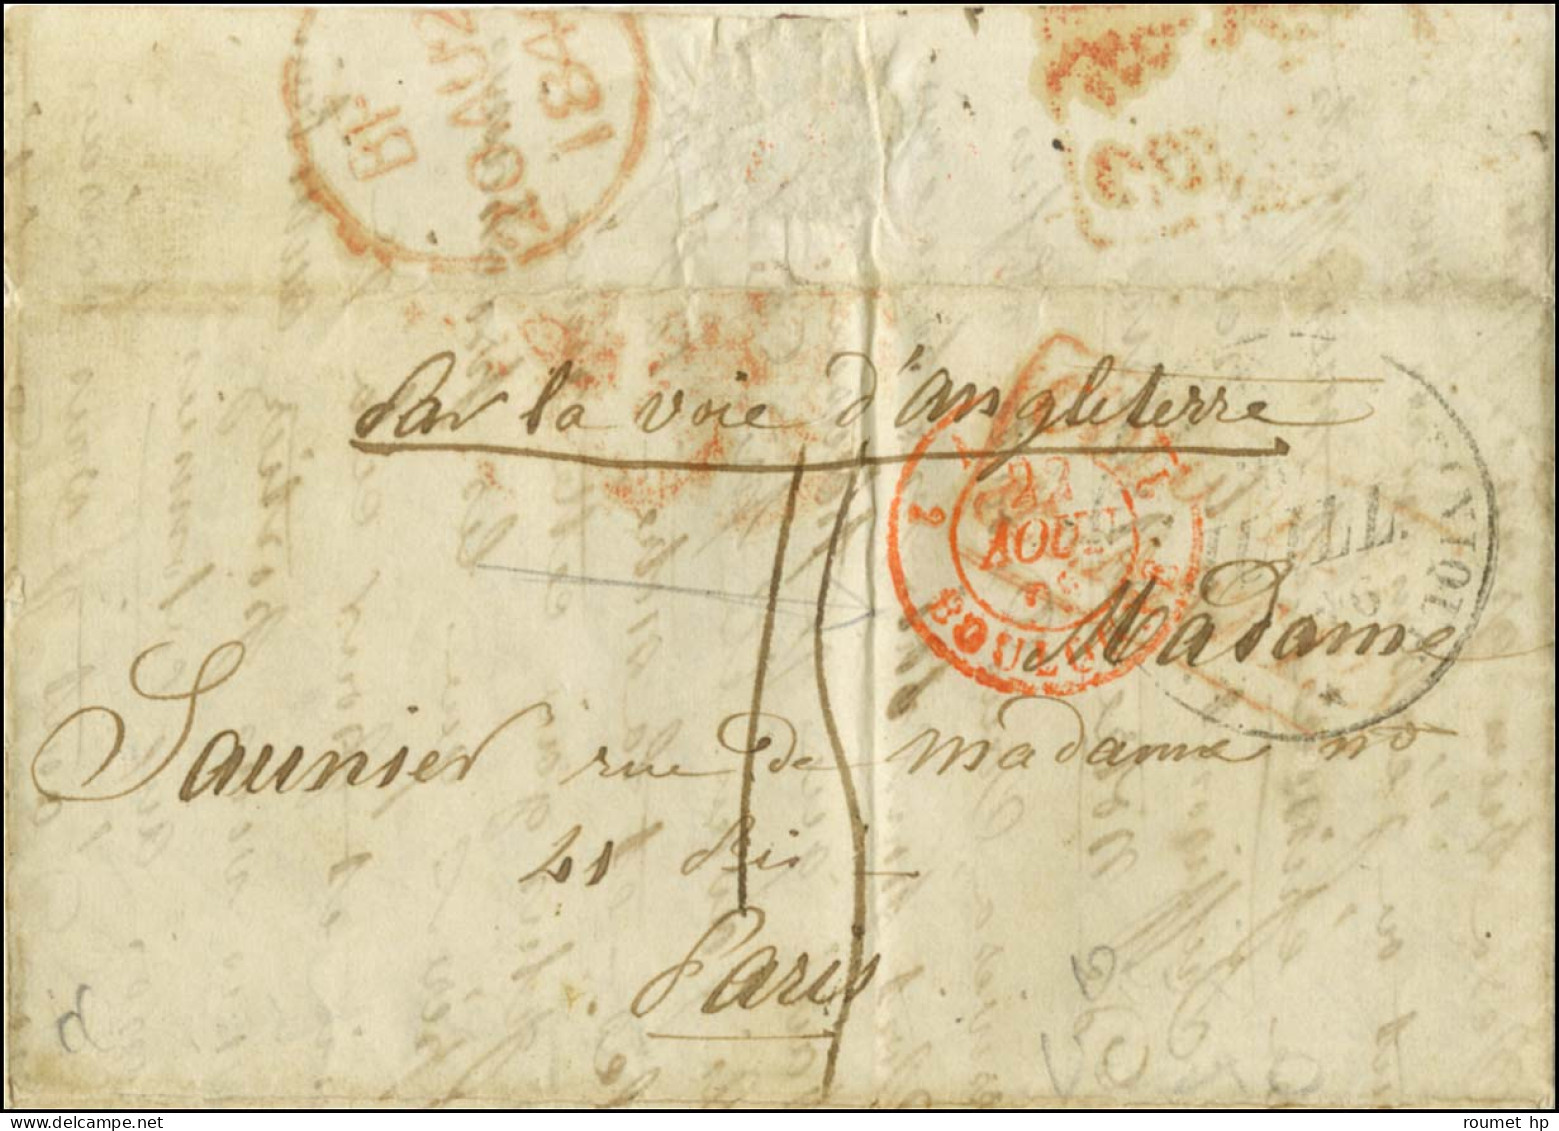 Lettre Avec Texte Et Petit Dessin à La Plume Datée De Port Royal Le 17 Juillet 1846 Pour Paris. - TB / SUP. - Maritime Post